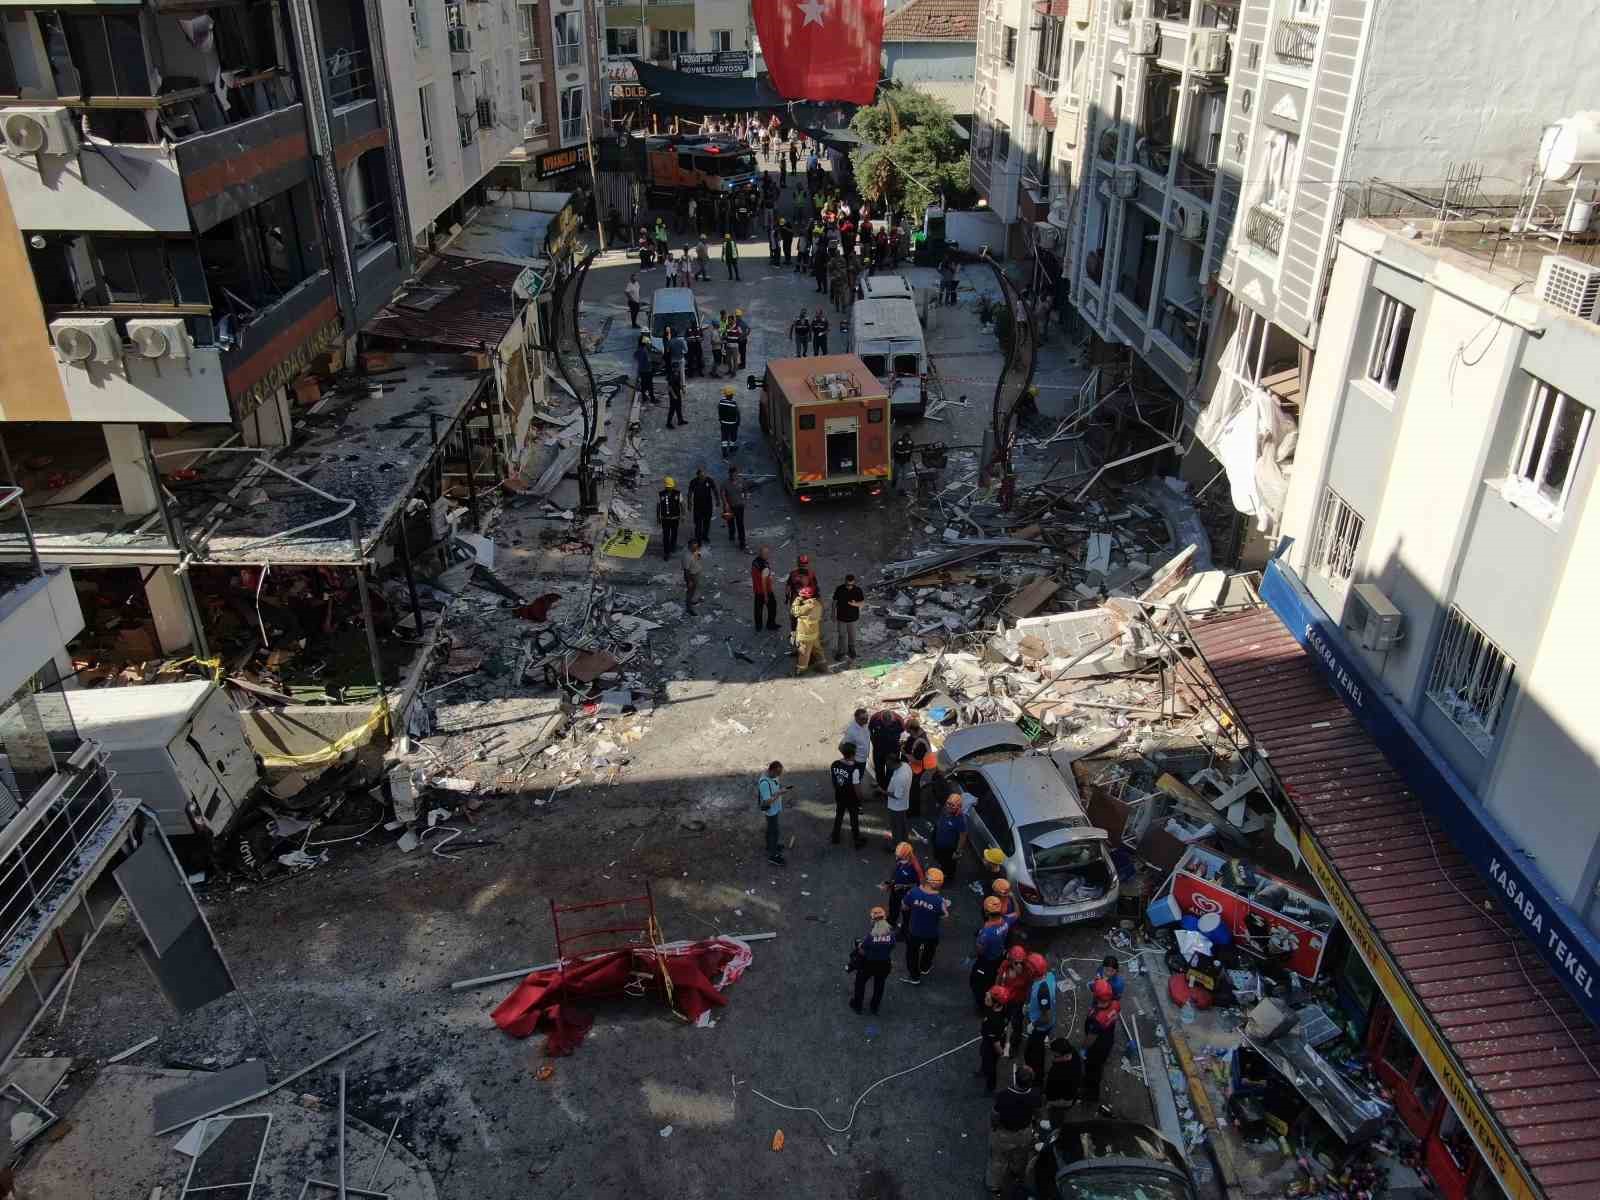 İzmir’in Torbalı ilçesi Ayrancılar Mahallesi’nde meydana gelen doğal gaz patlaması nedeniyle 4 kişinin hayatını kaybettiği, 15’in üzerinde yaralı olduğu öğrenildi. Olay yerine sevk edilen jandarma, sağlık, itfaiye ve AFAD ekiplerinin çalışmaları sürüyor.
